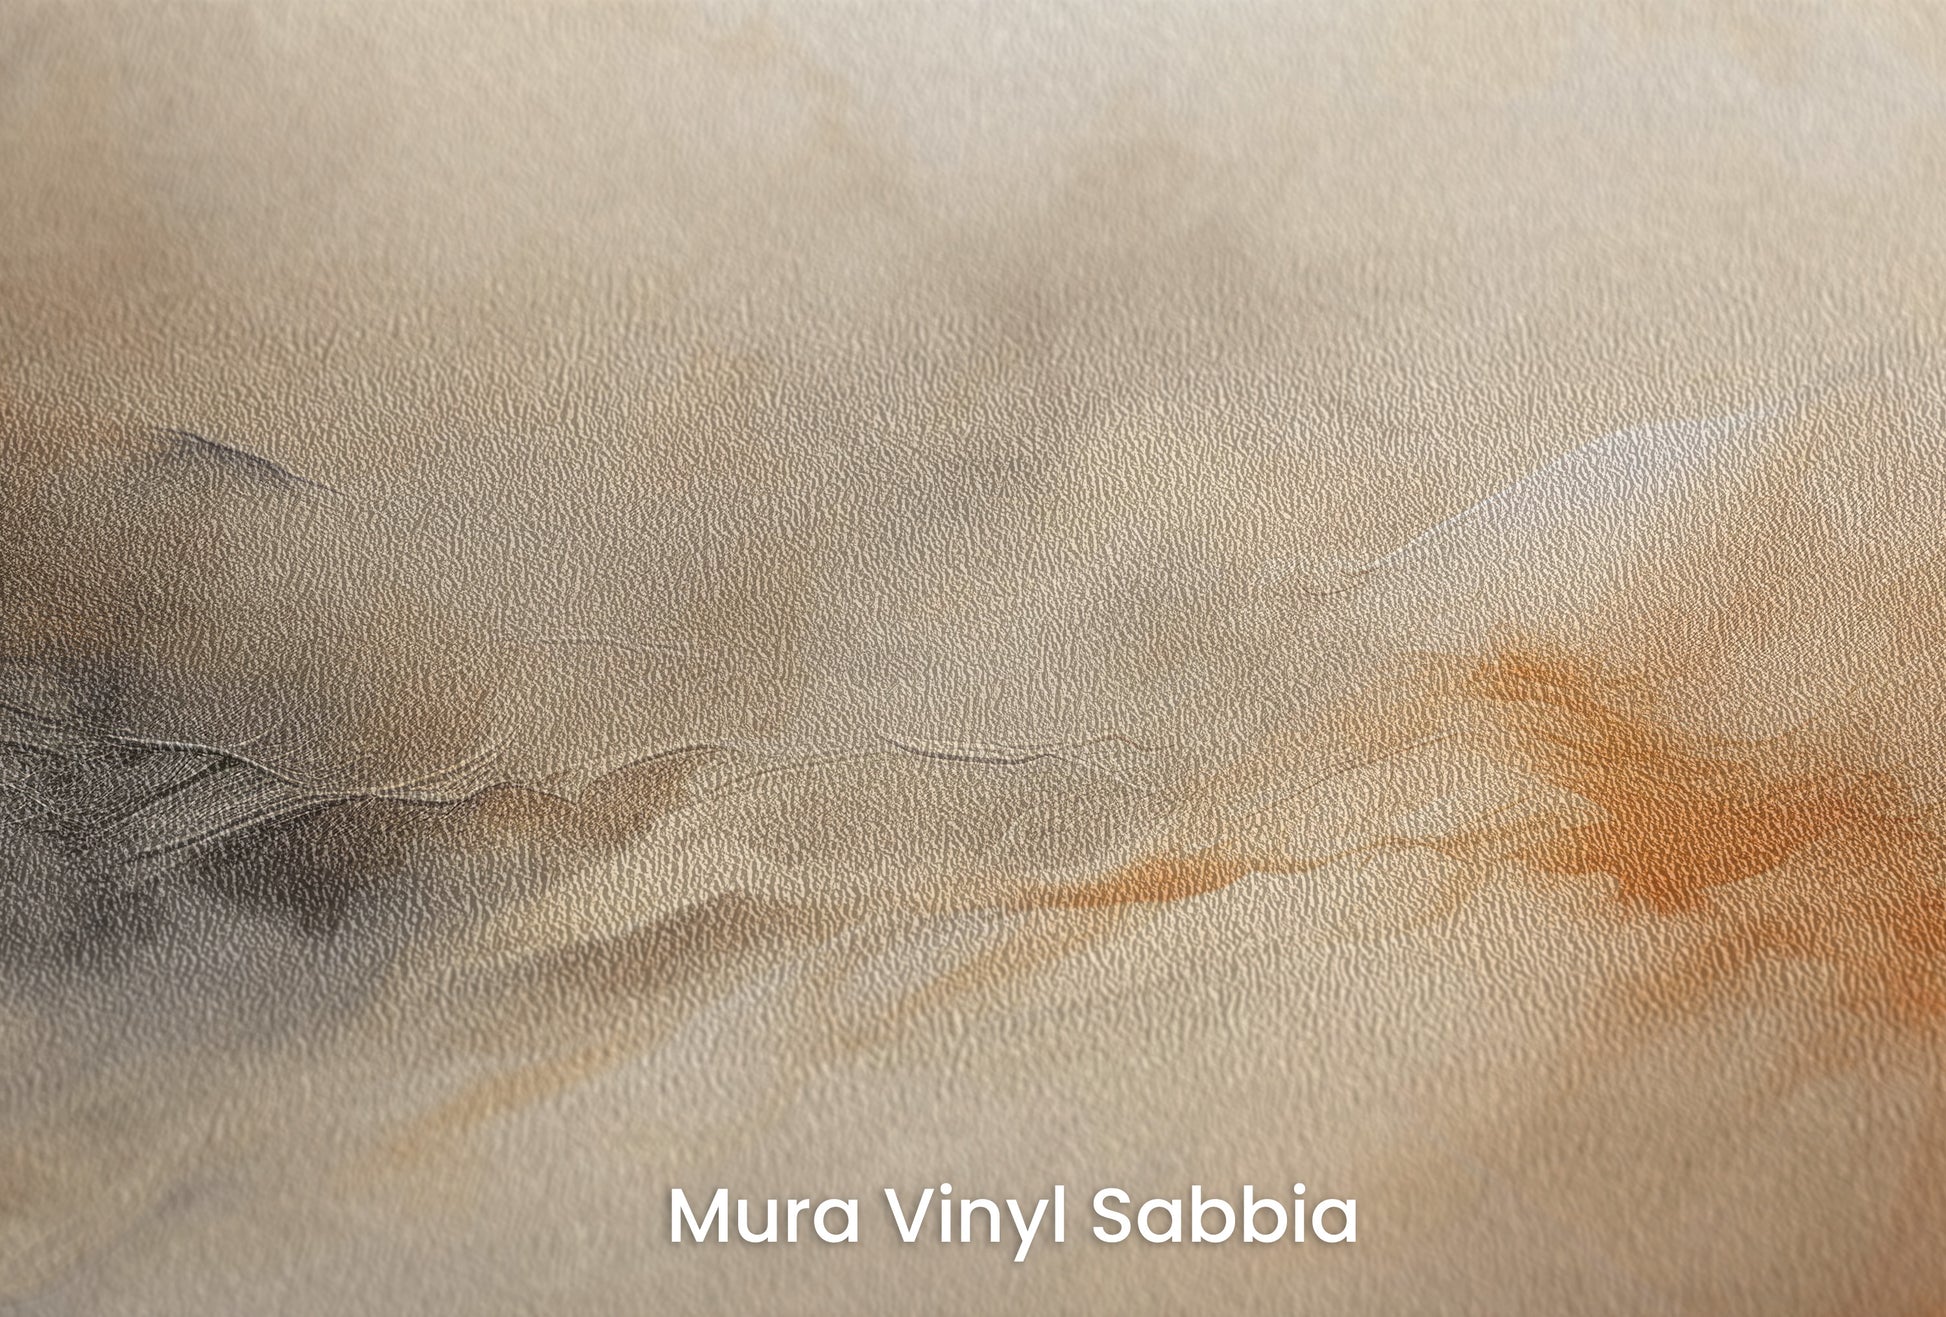 Zbliżenie na artystyczną fototapetę o nazwie ETHEREAL FLAME DANCE na podłożu Mura Vinyl Sabbia struktura grubego ziarna piasku.